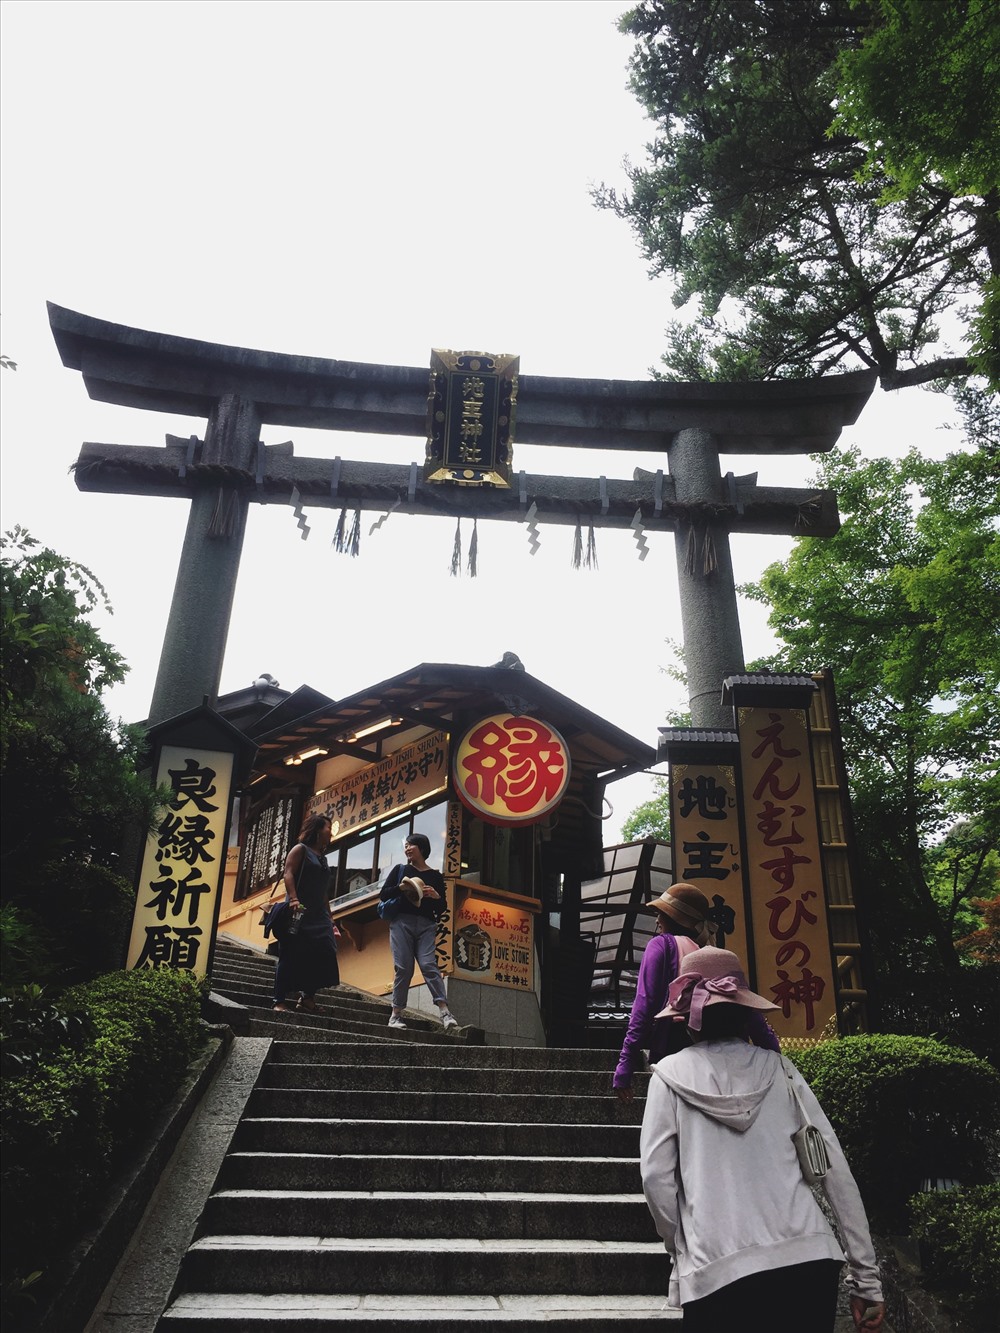 Đi theo lộ trình sẽ có bậc tam cấp bên tay trái. Đây là lối vào của “Đền thần Jishu“. Việc tồn tại cả chùa và đền thần là 1 tôn giáo khác trong cùng 1 khuôn viên có lẽ là cũng khá khác lạ đối với người nước ngoài, nhưng lại khá phổ biến ở Nhật. Ảnh: Linh Gooner